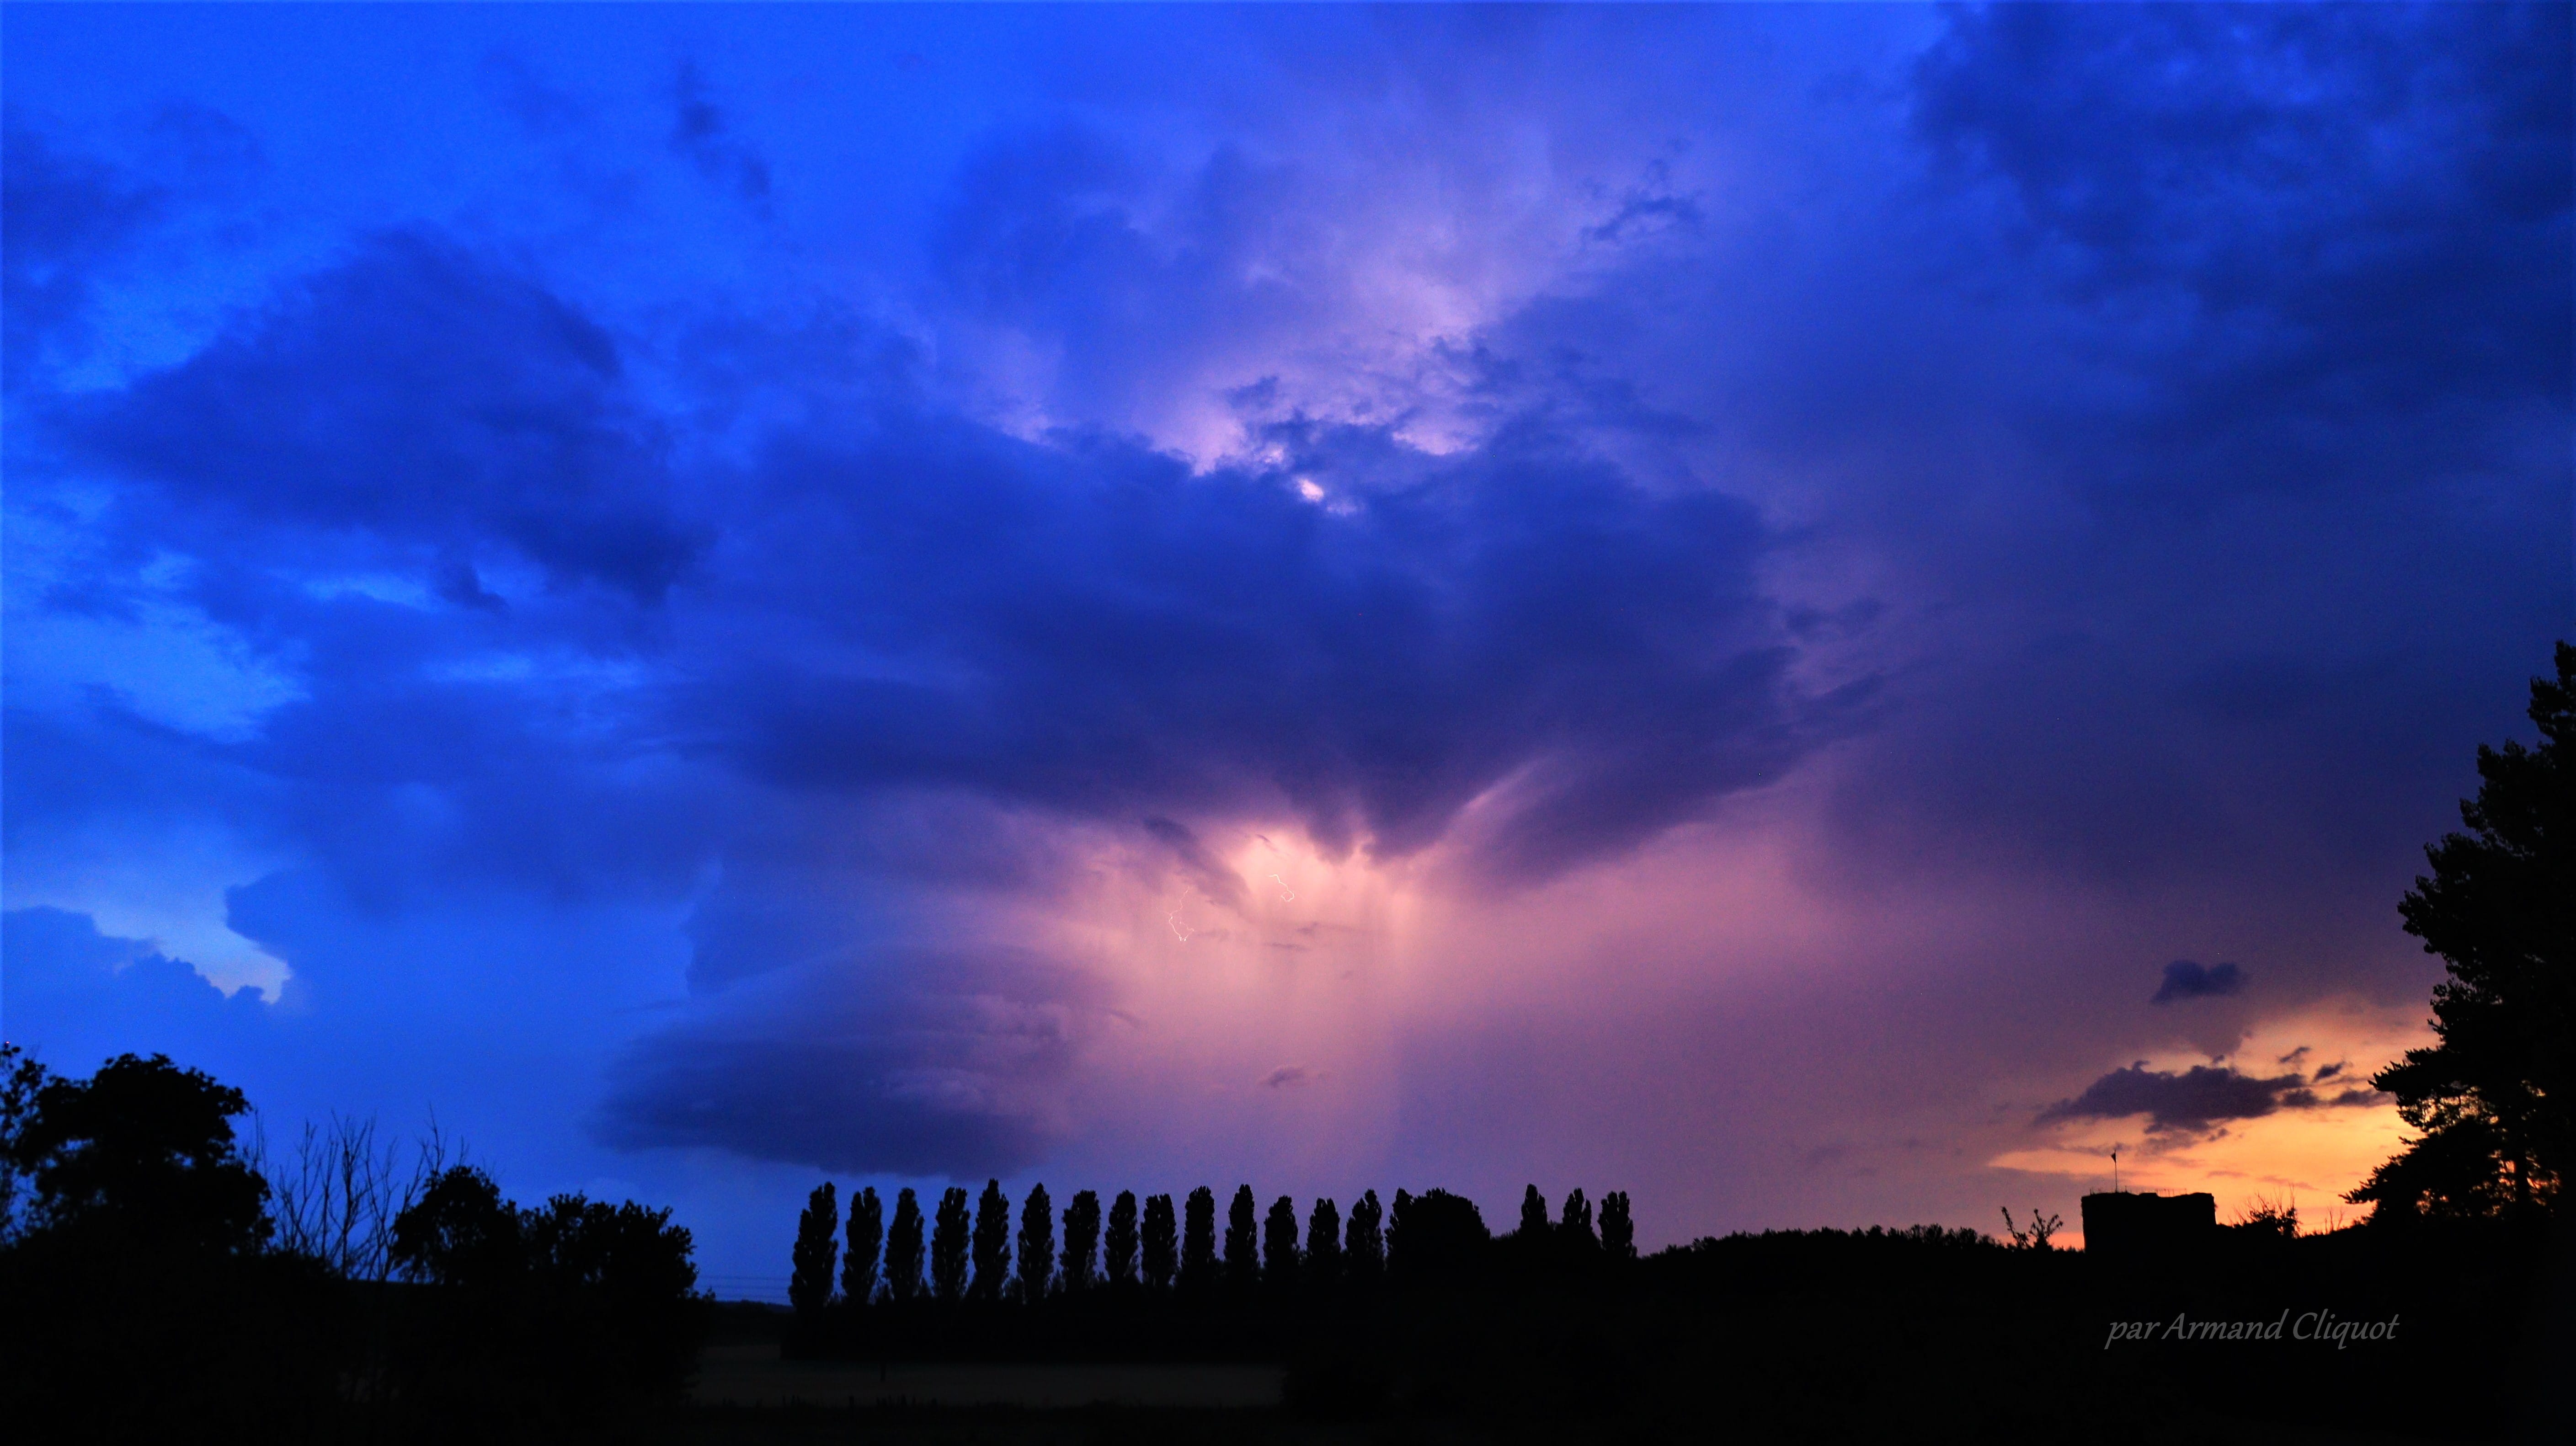 Bonsoir, une jolie supercellule s'est développée au soir du 22 juin, dans le Sud de l'Aisne. La rotation s'est effectuée entre deux complexes orageux. Les nombreux éclairs l'ont illuminée pendant une bonne demie-heure ! - 26/06/2020 22:46 - Armand Cliquot